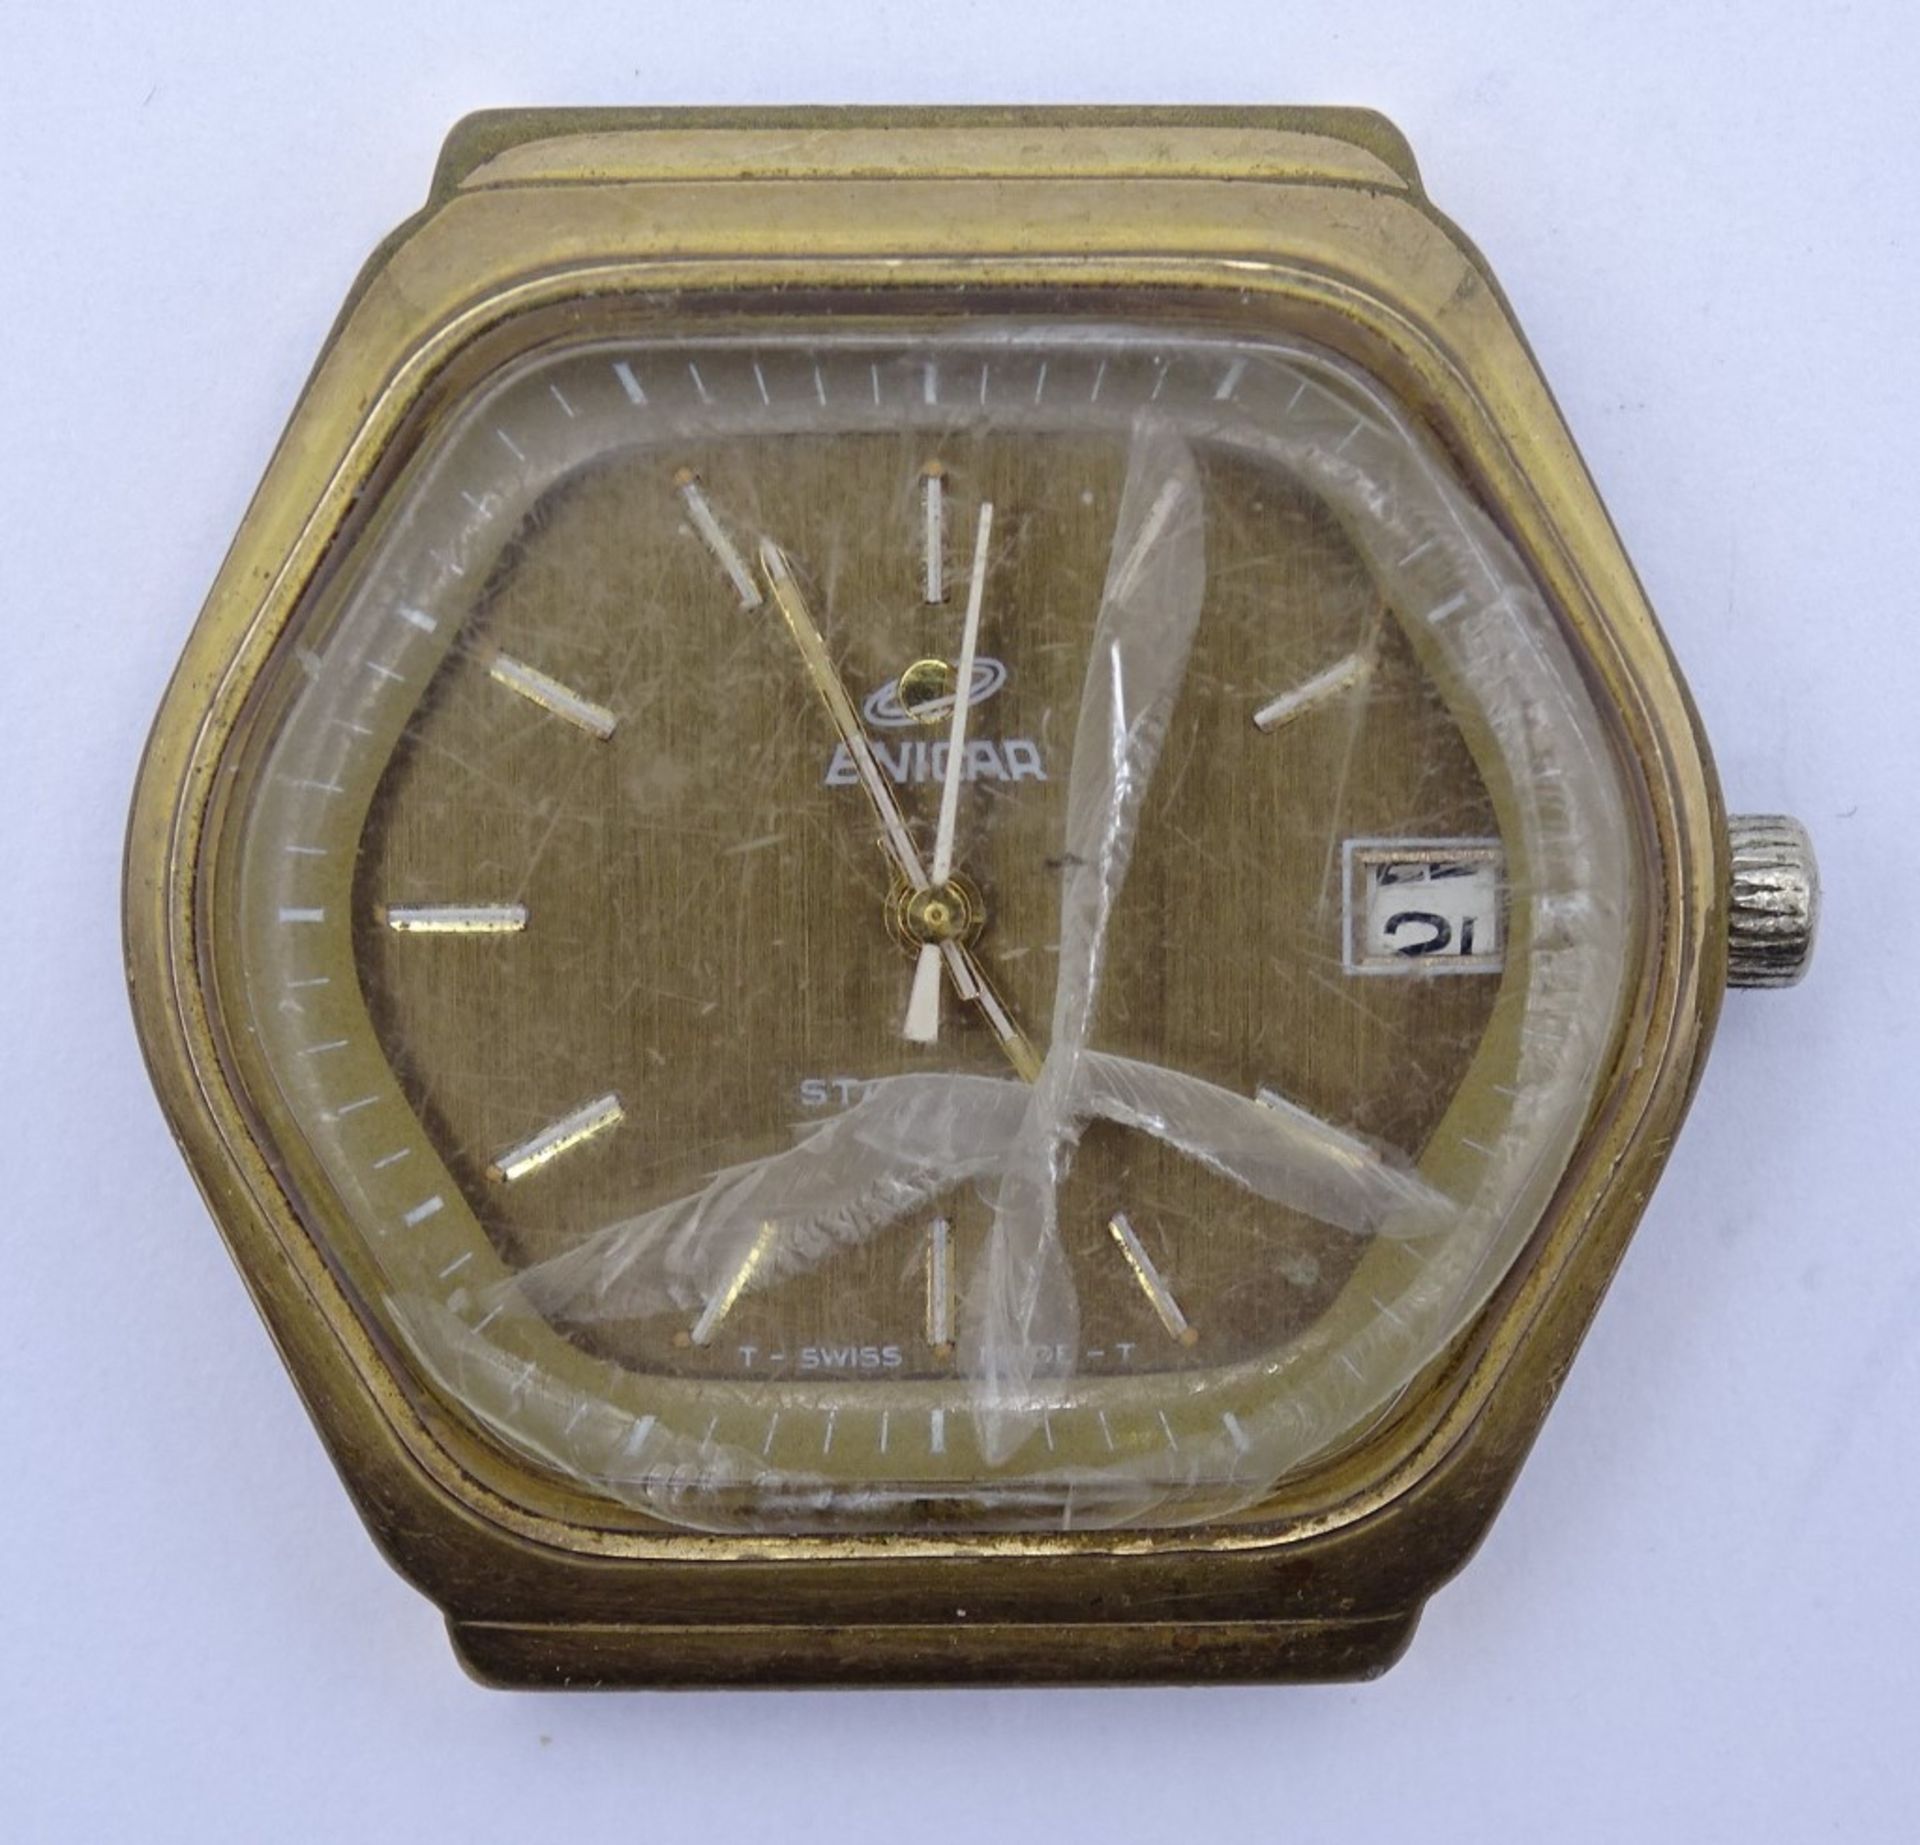 Herren Armbanduhr Enicar MRO Star, 2367, Cal. 161, Werk läuft nur min.an, Glas beschädigt, 35x35mm, - Bild 2 aus 4